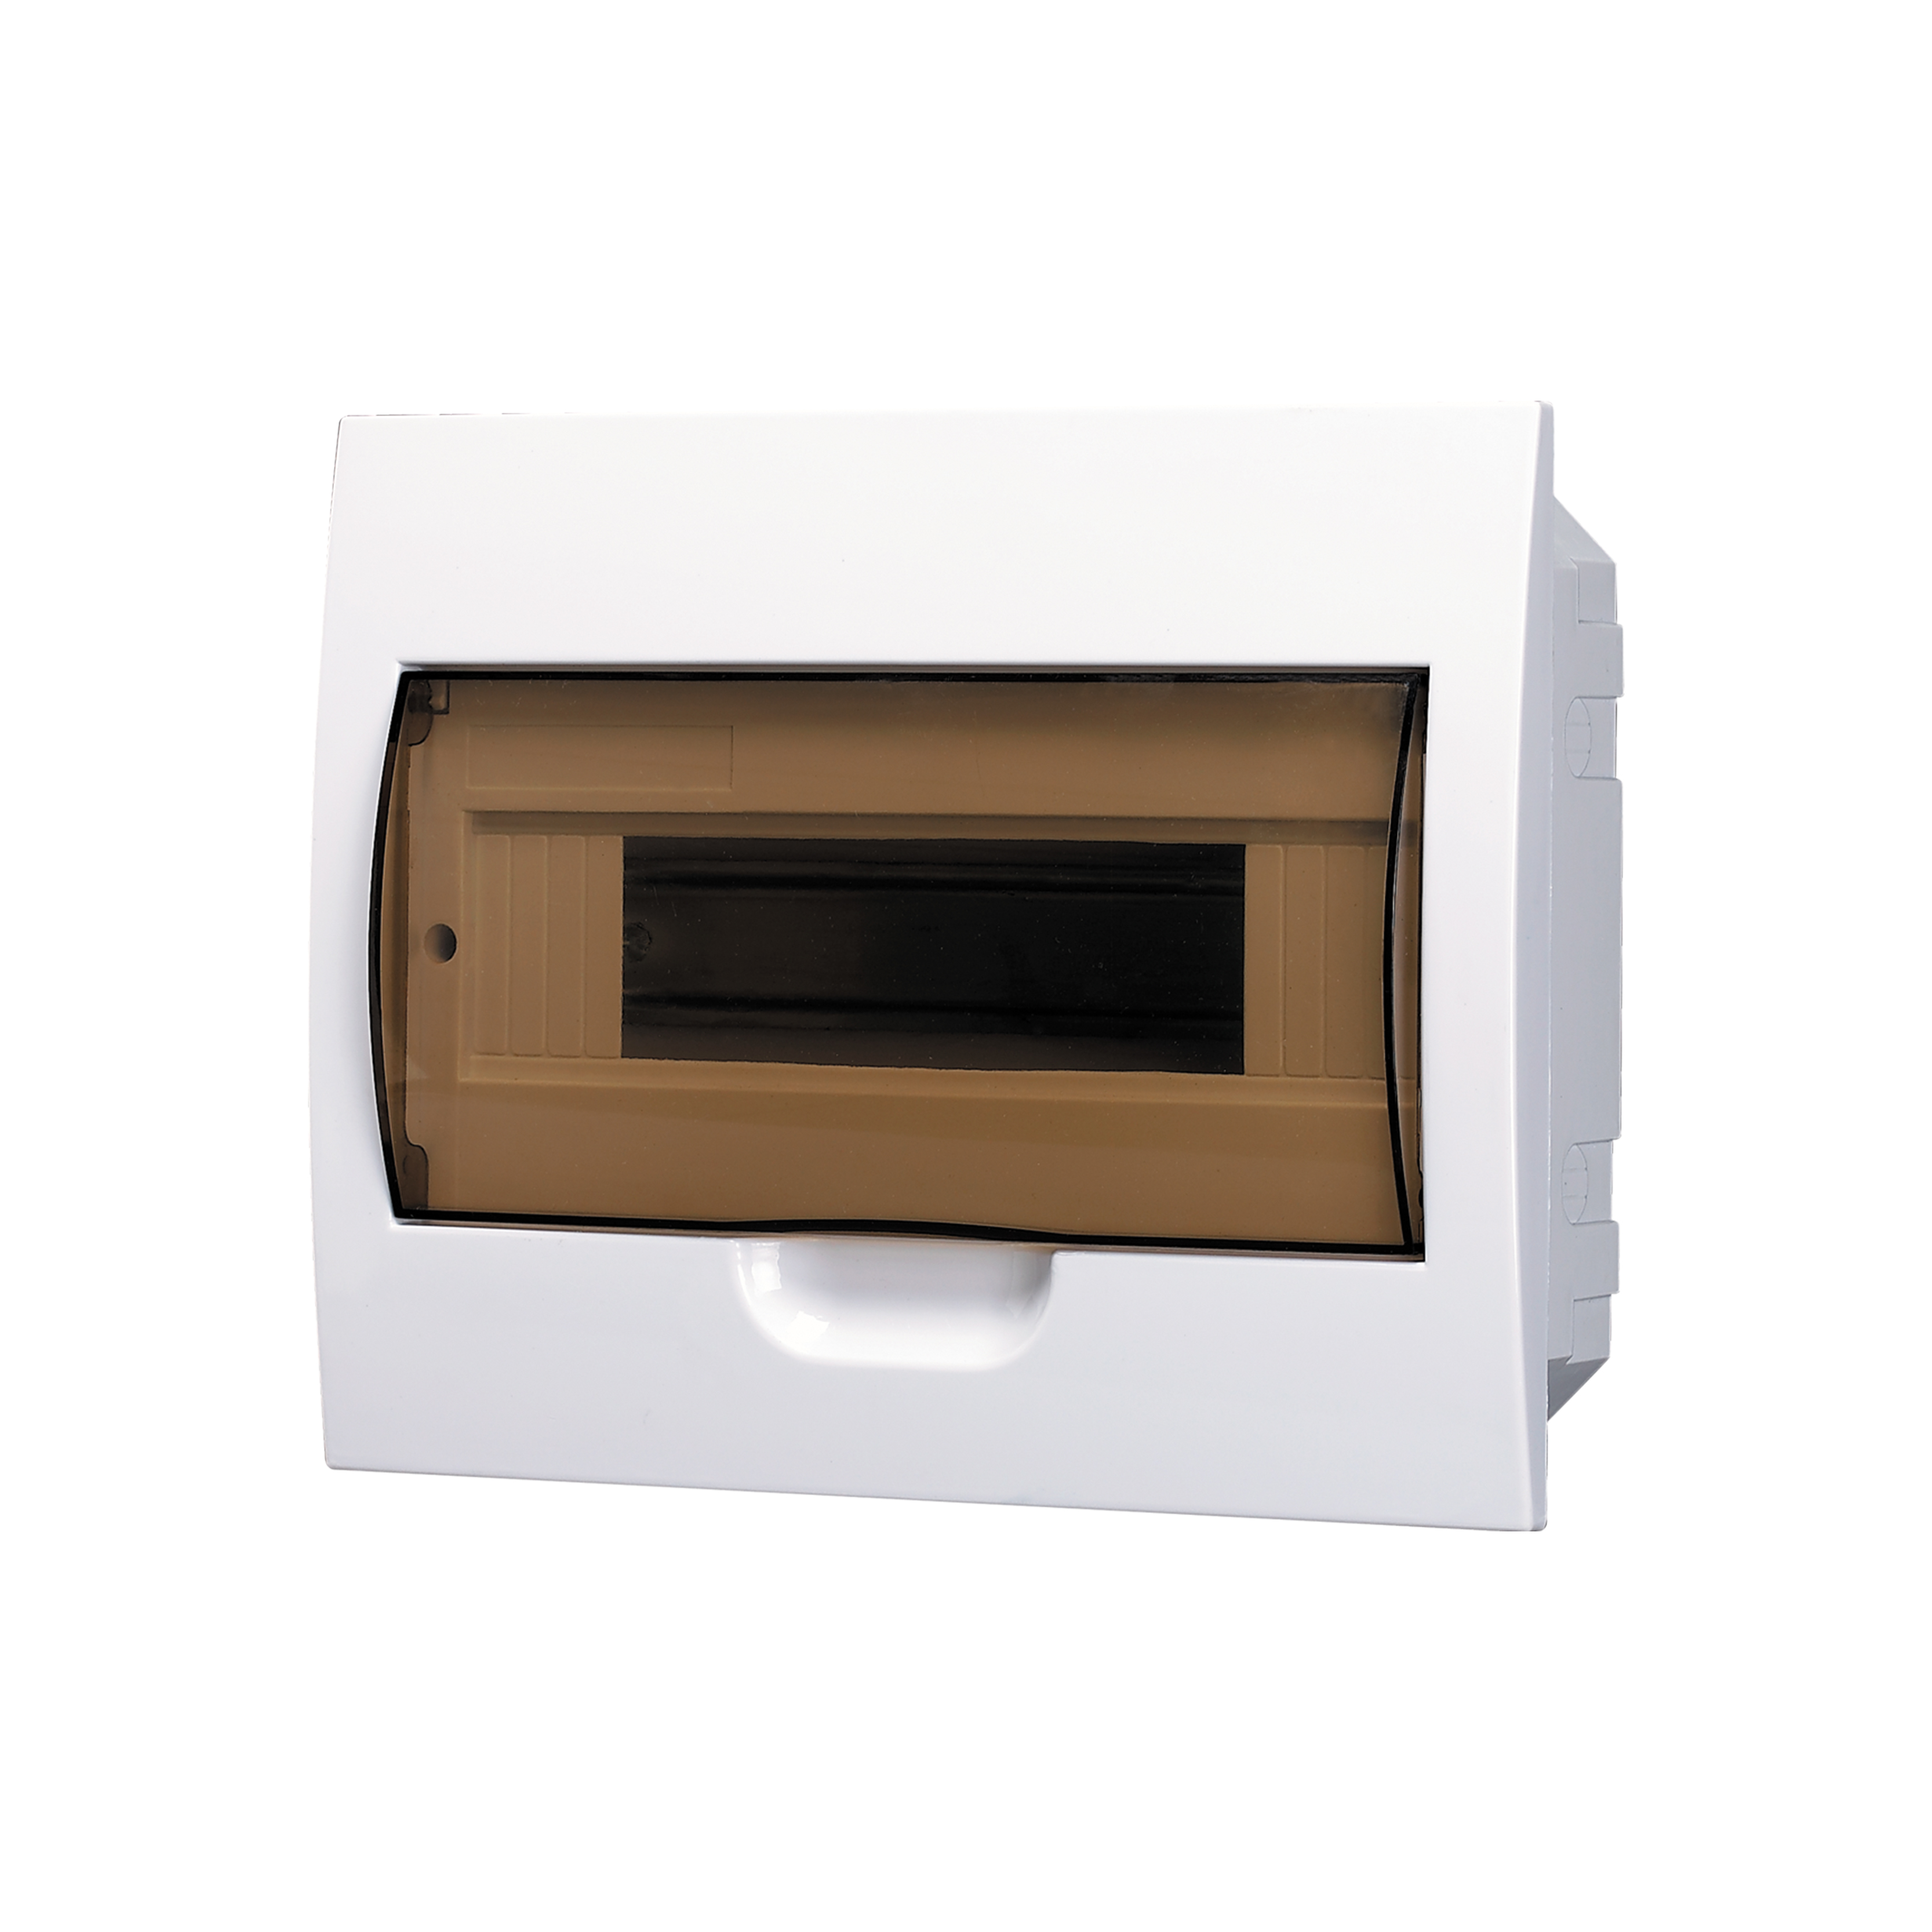 YCX2 Flush Mount Distribution Box